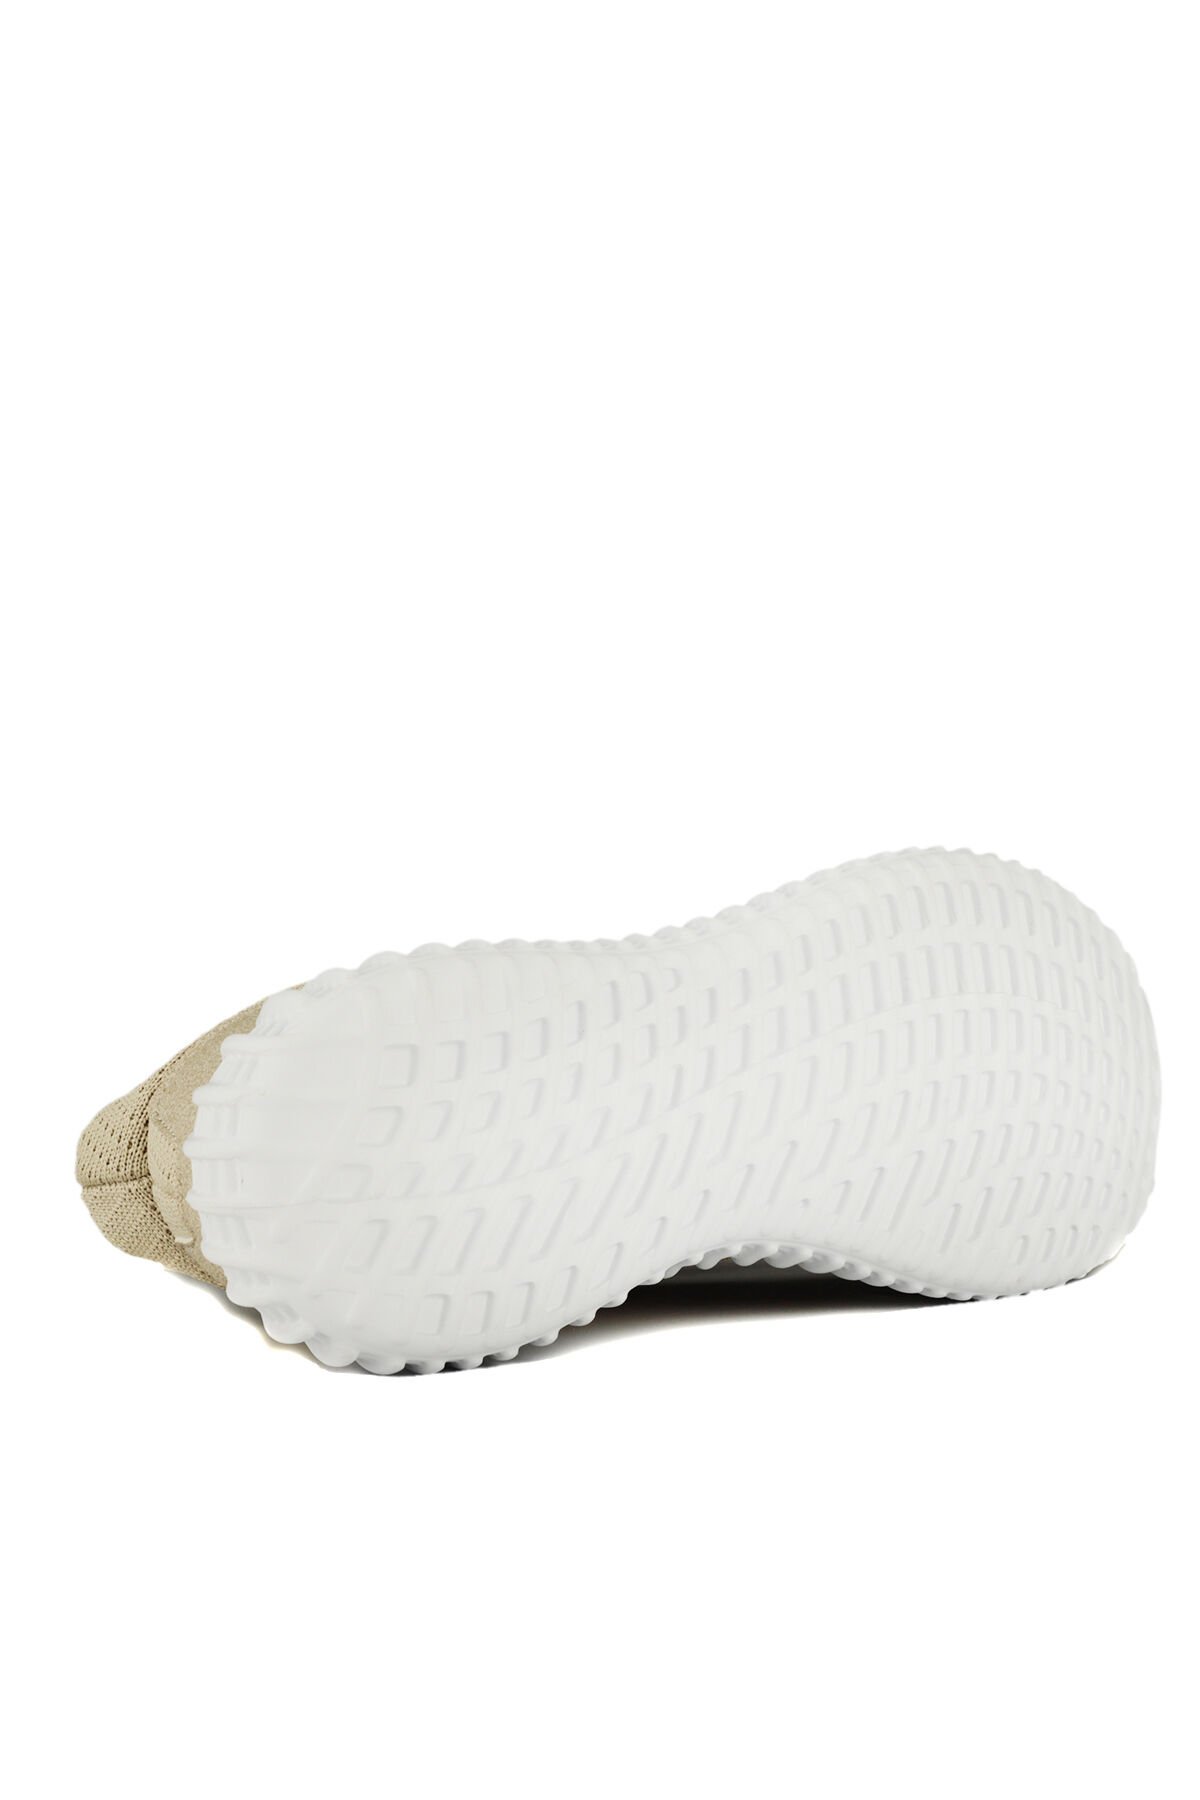 ATOMIC Sneaker Erkek Ayakkabı Bej - Thumbnail